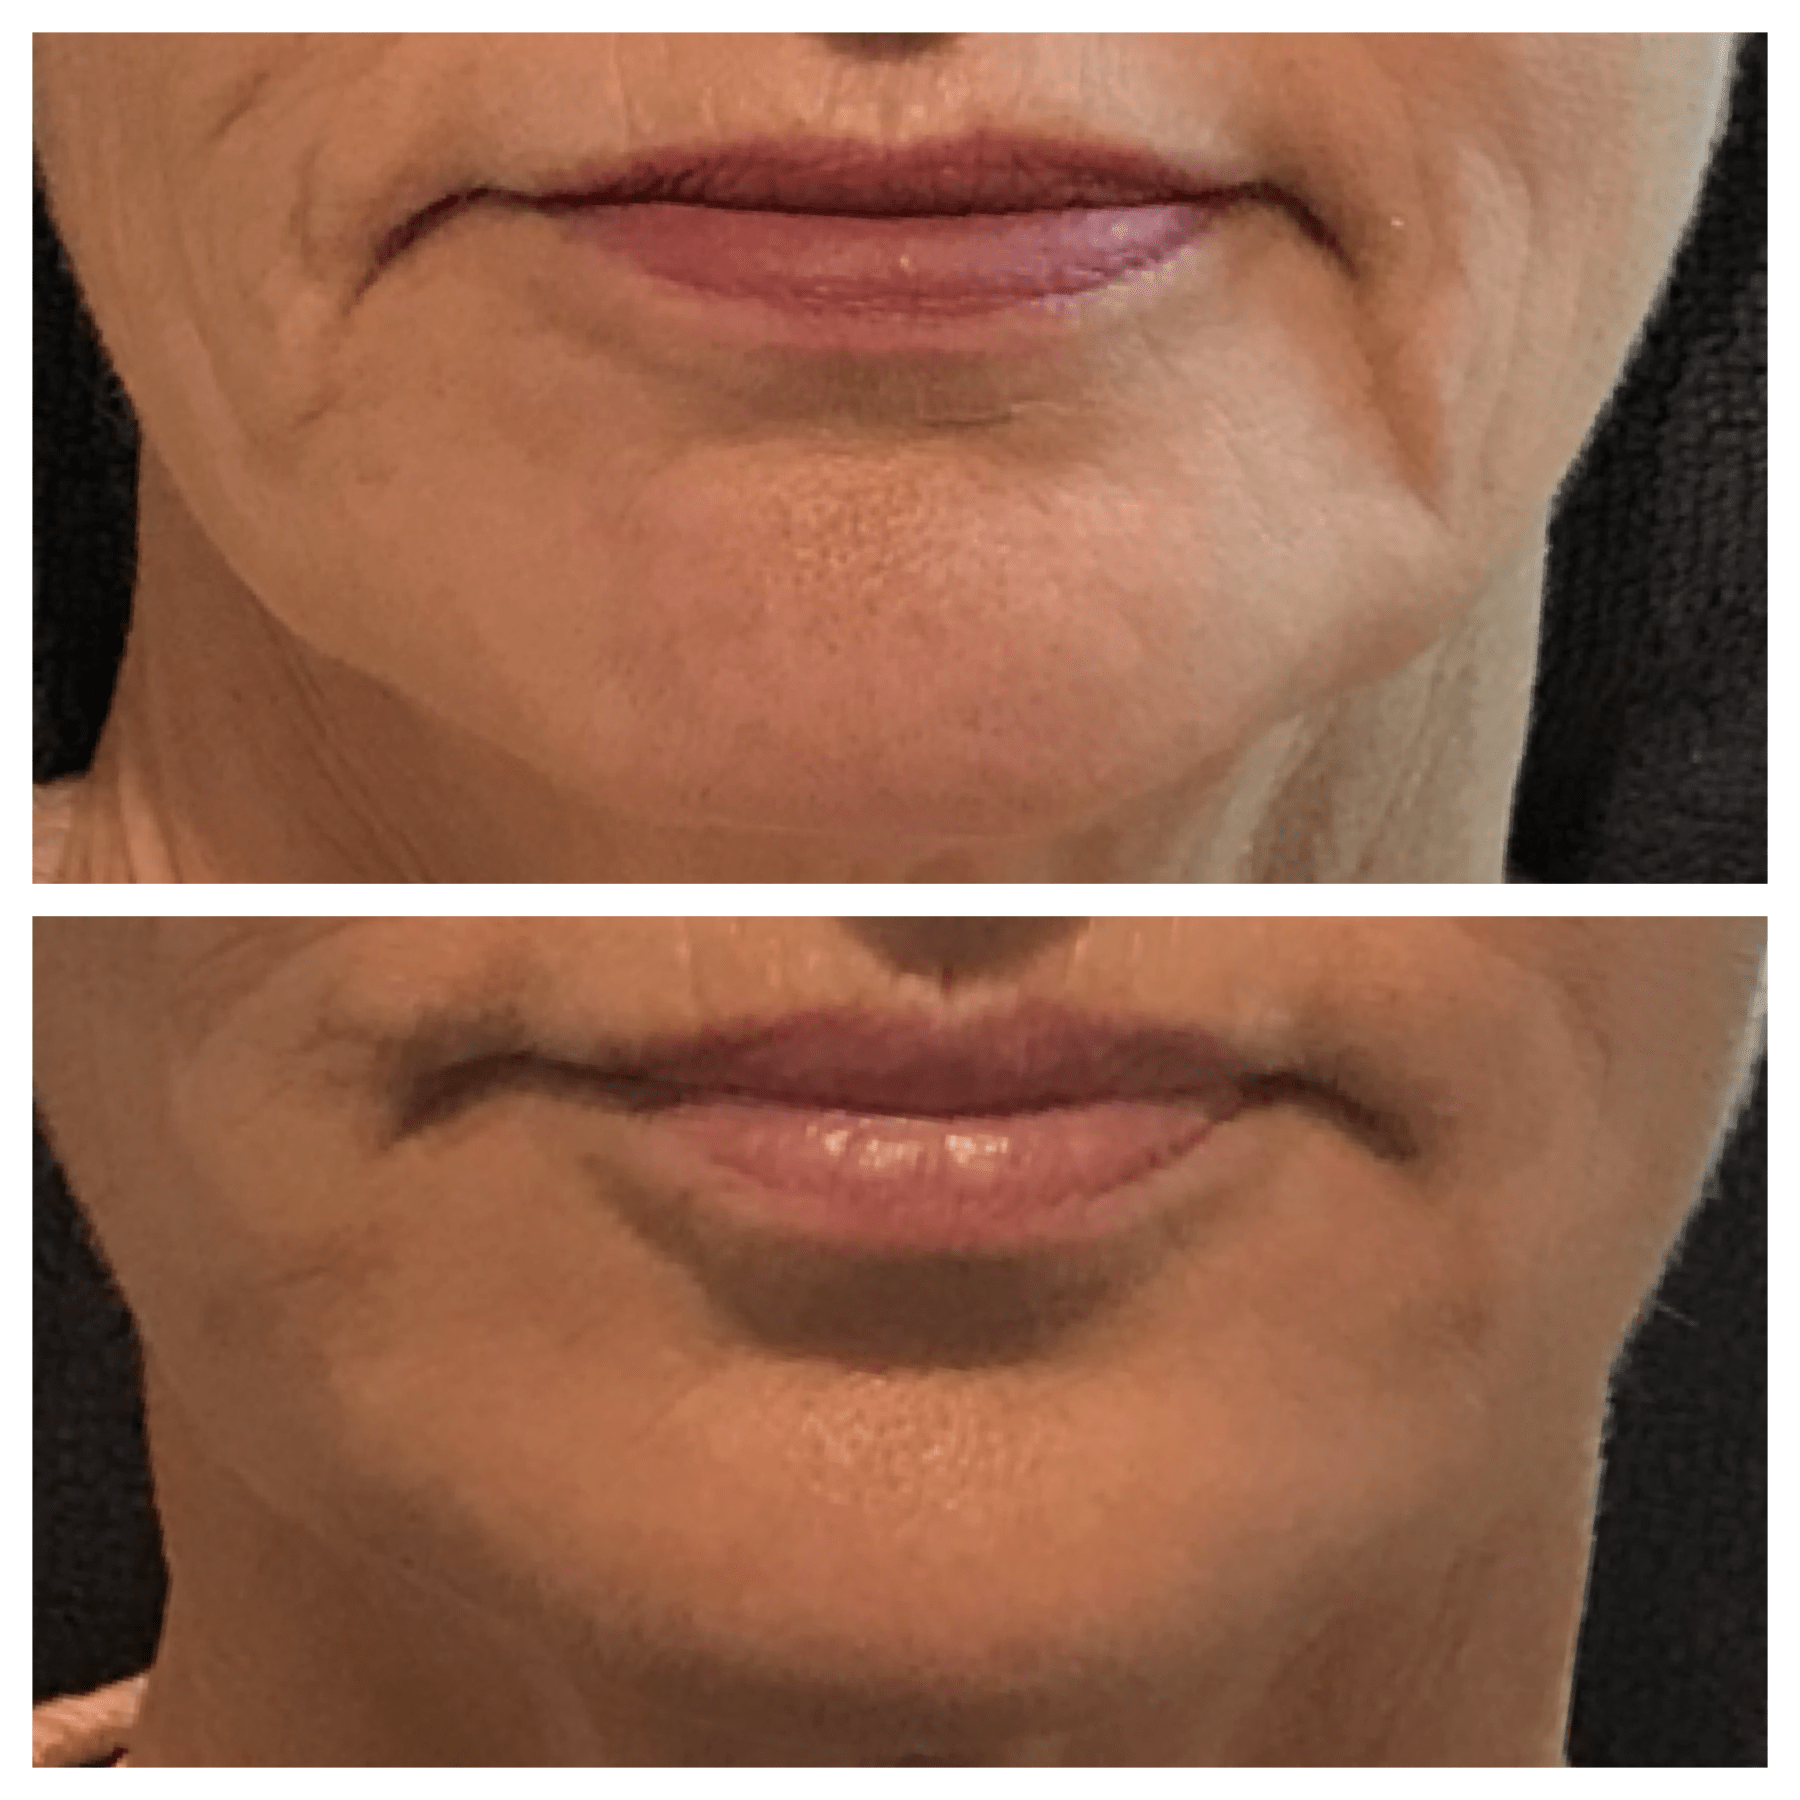 Lip filler injection dermal result treatment